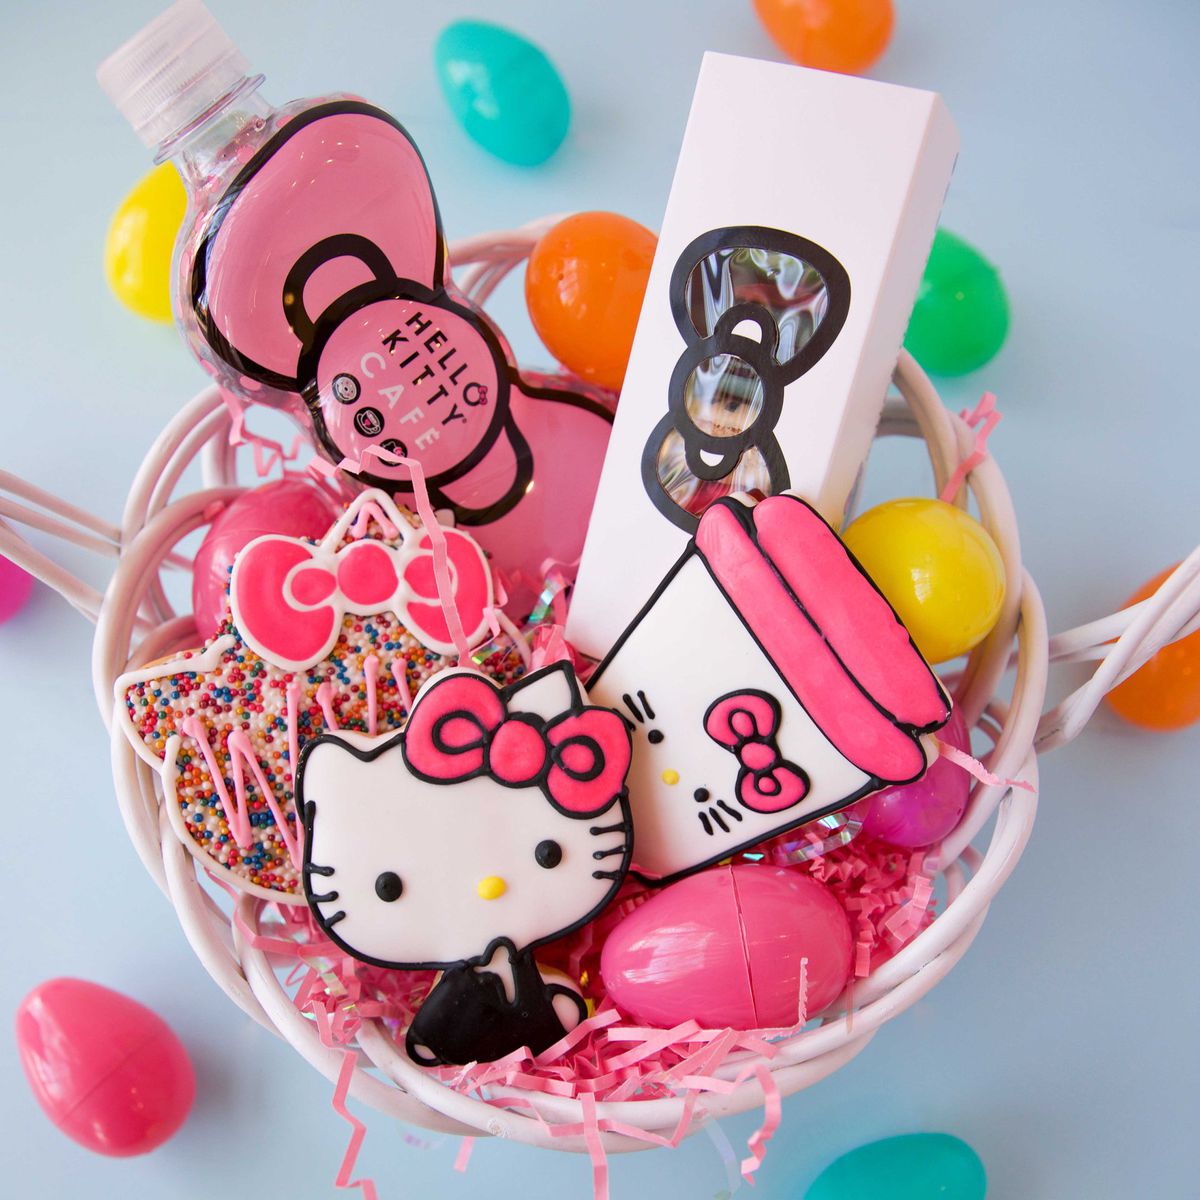 Hello Kitty Cafe treats